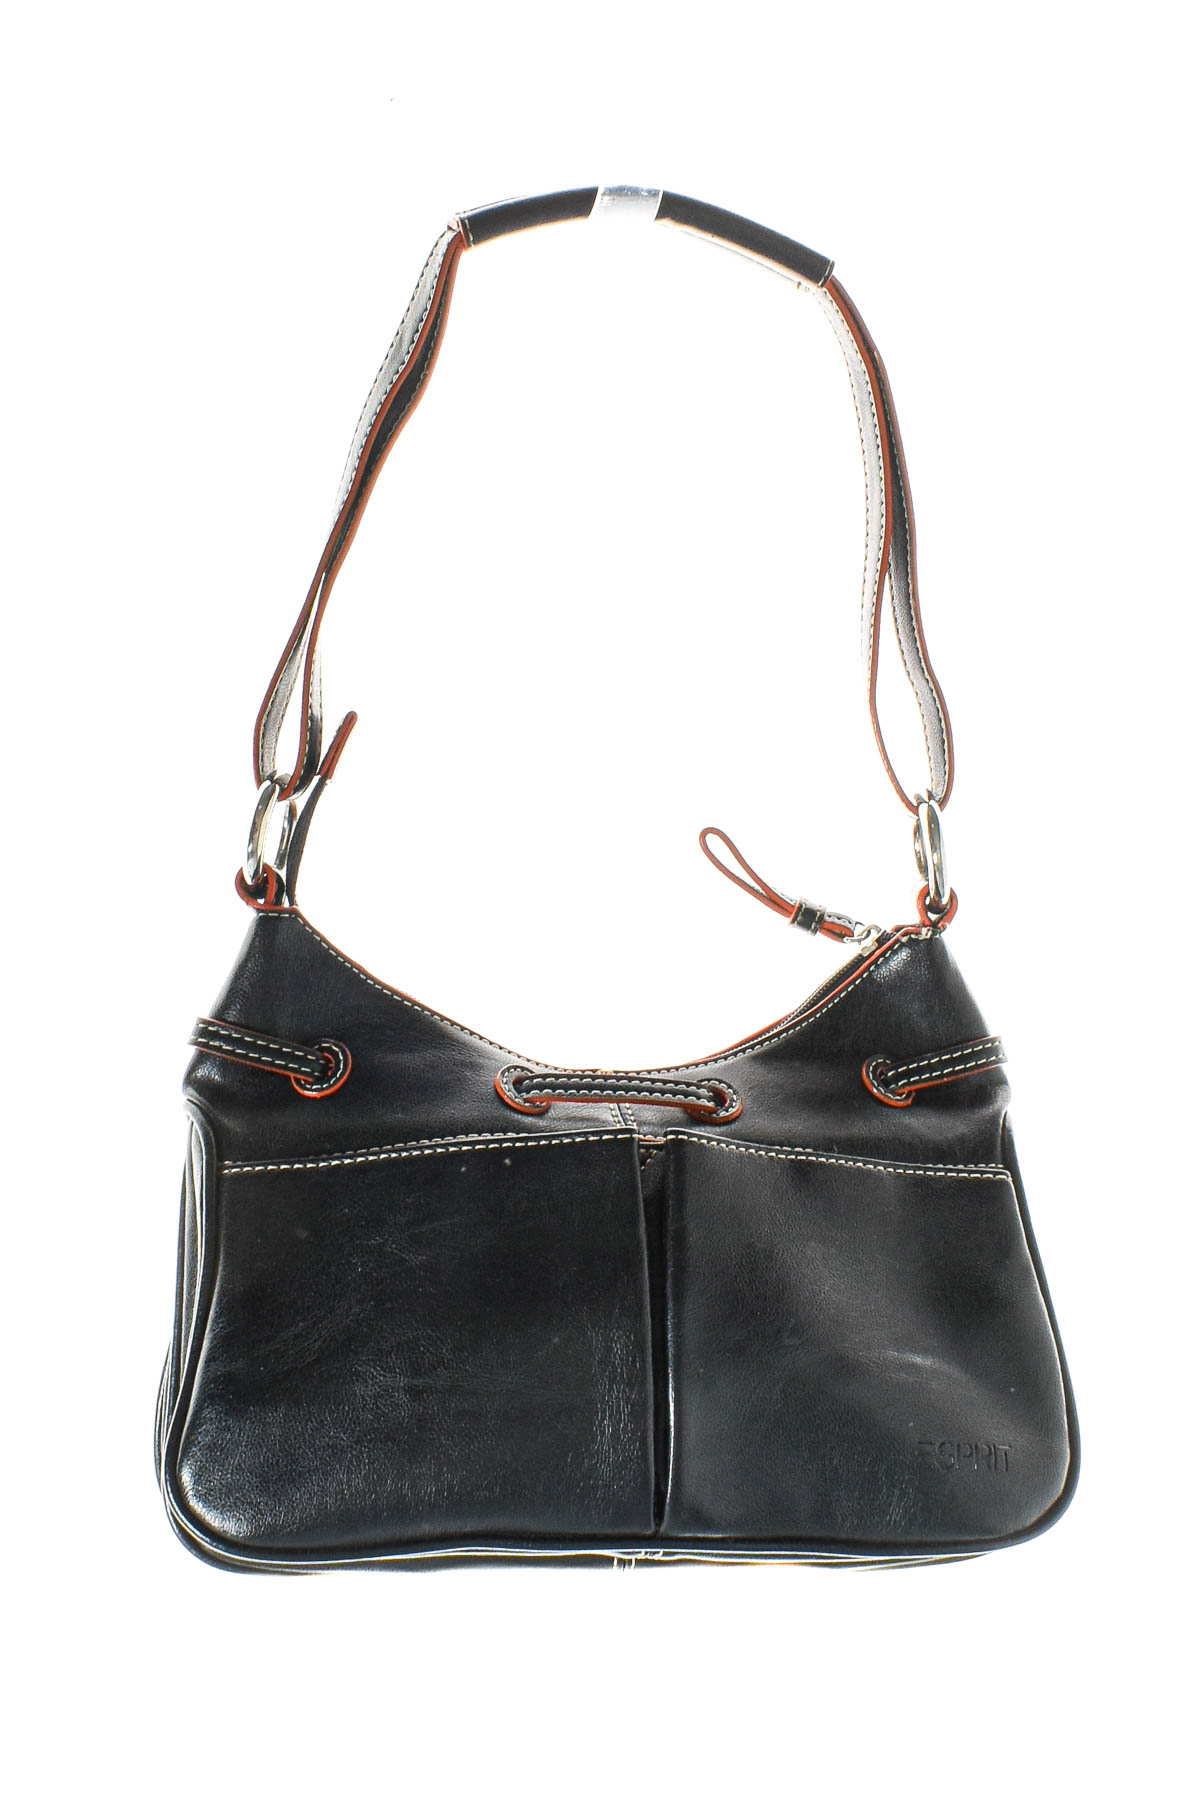 Women's bag - ESPRIT - 0